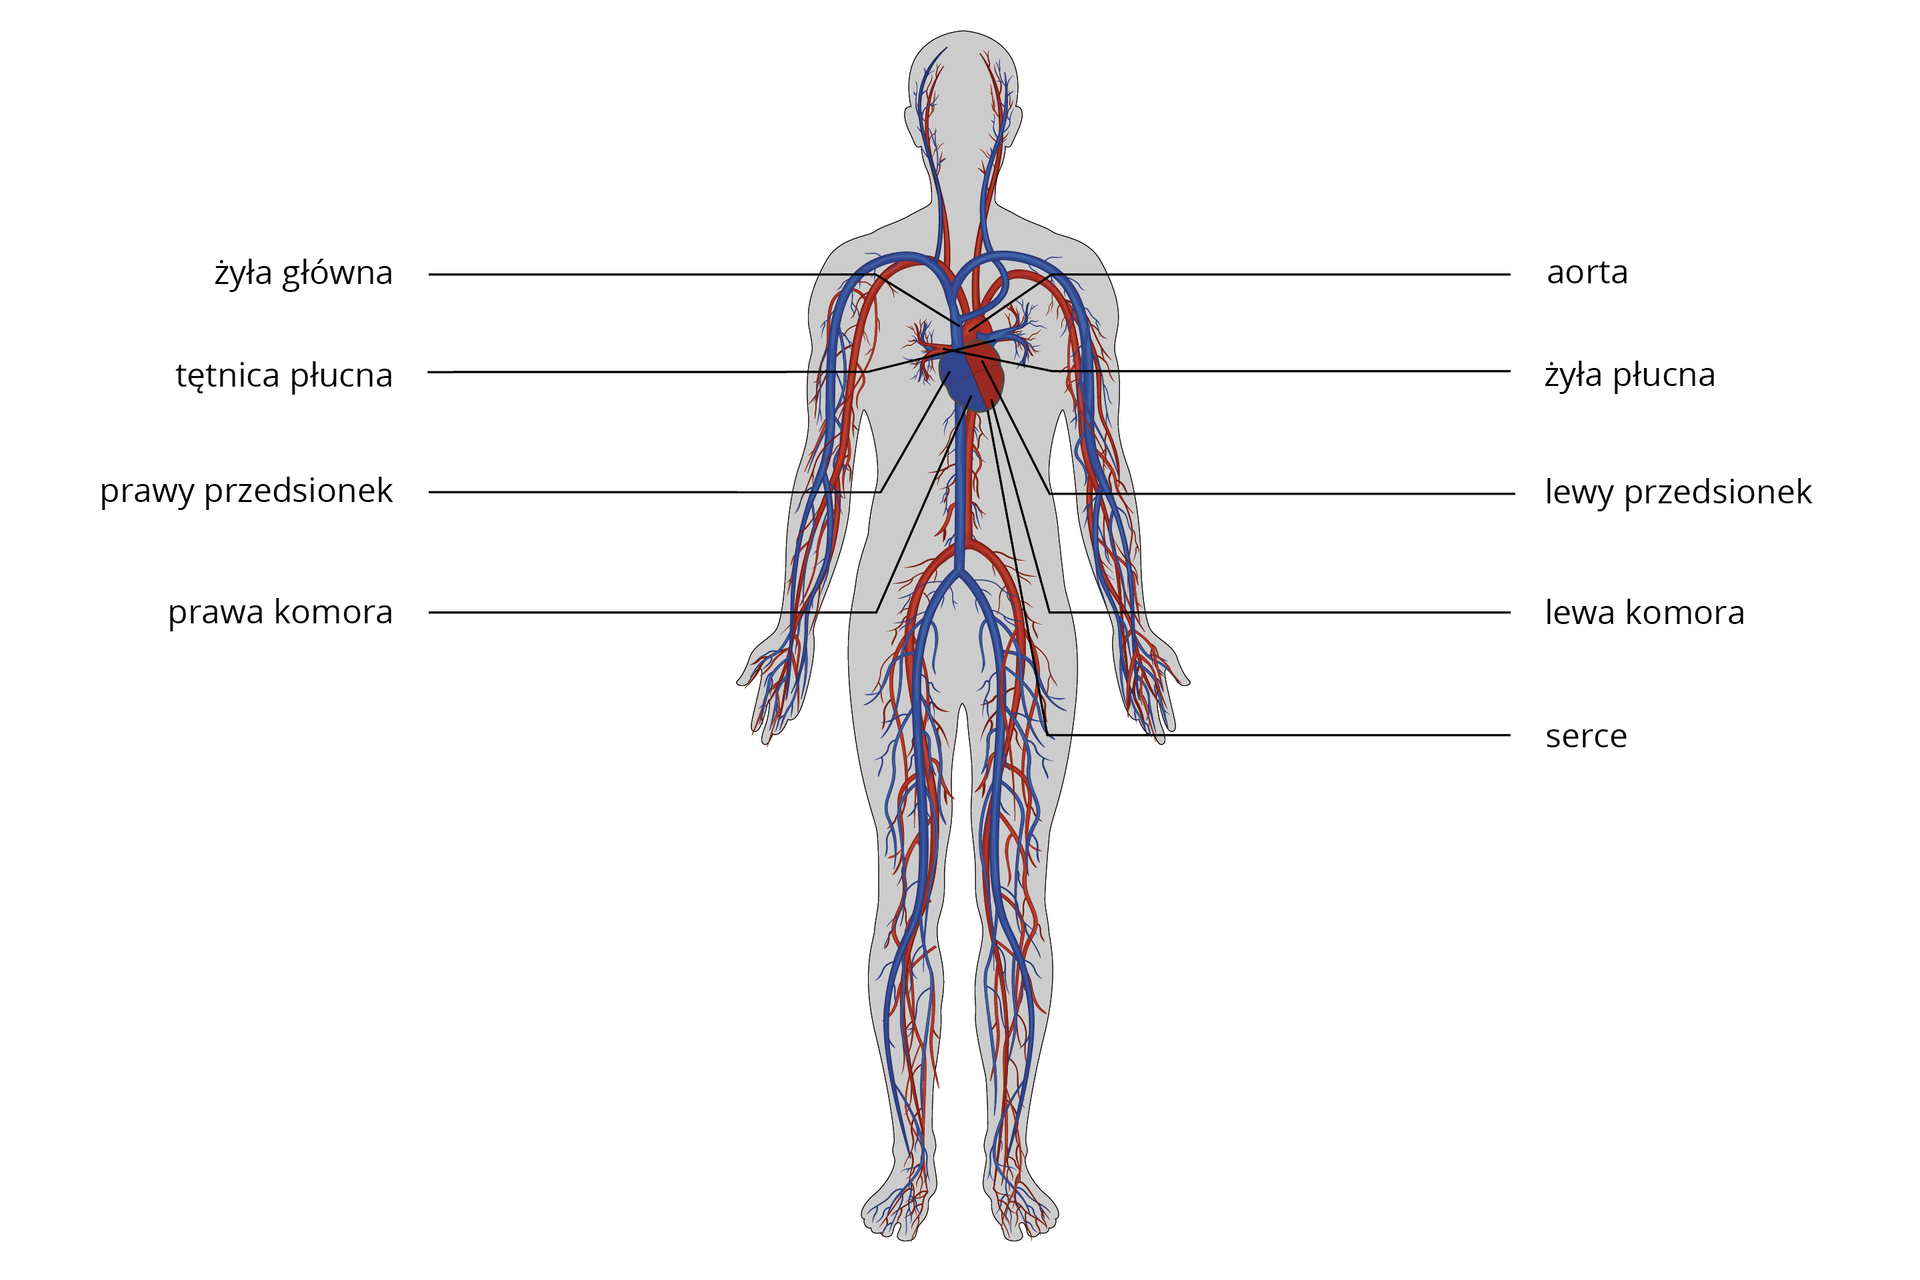 Ilustracja przedstawia budowę układu krwionośnego człowieka. Na fioletowo oznaczono tą część układu krwionośnego, gdzie jest krew odtlenowana, a na czerwono gdzie jest krew natlenowana. W śródpiersiu znajduje się serce. Po lewej stronie sylwetki człowieka serce oznaczono na fioletowo, są to prawy przedsionek i prawa komora. Do prawego przedsionka uchodzi żyła główna, a z komory prawej wychodzi tętnica płucna. Po prawej stronie sylwetki człowieka serce oznaczono na czerwono, są to lewy przedsionek i lewa komora. Do prawego przedsionka uchodzi żyła płucna, a z komory prawej wychodzi aorta.